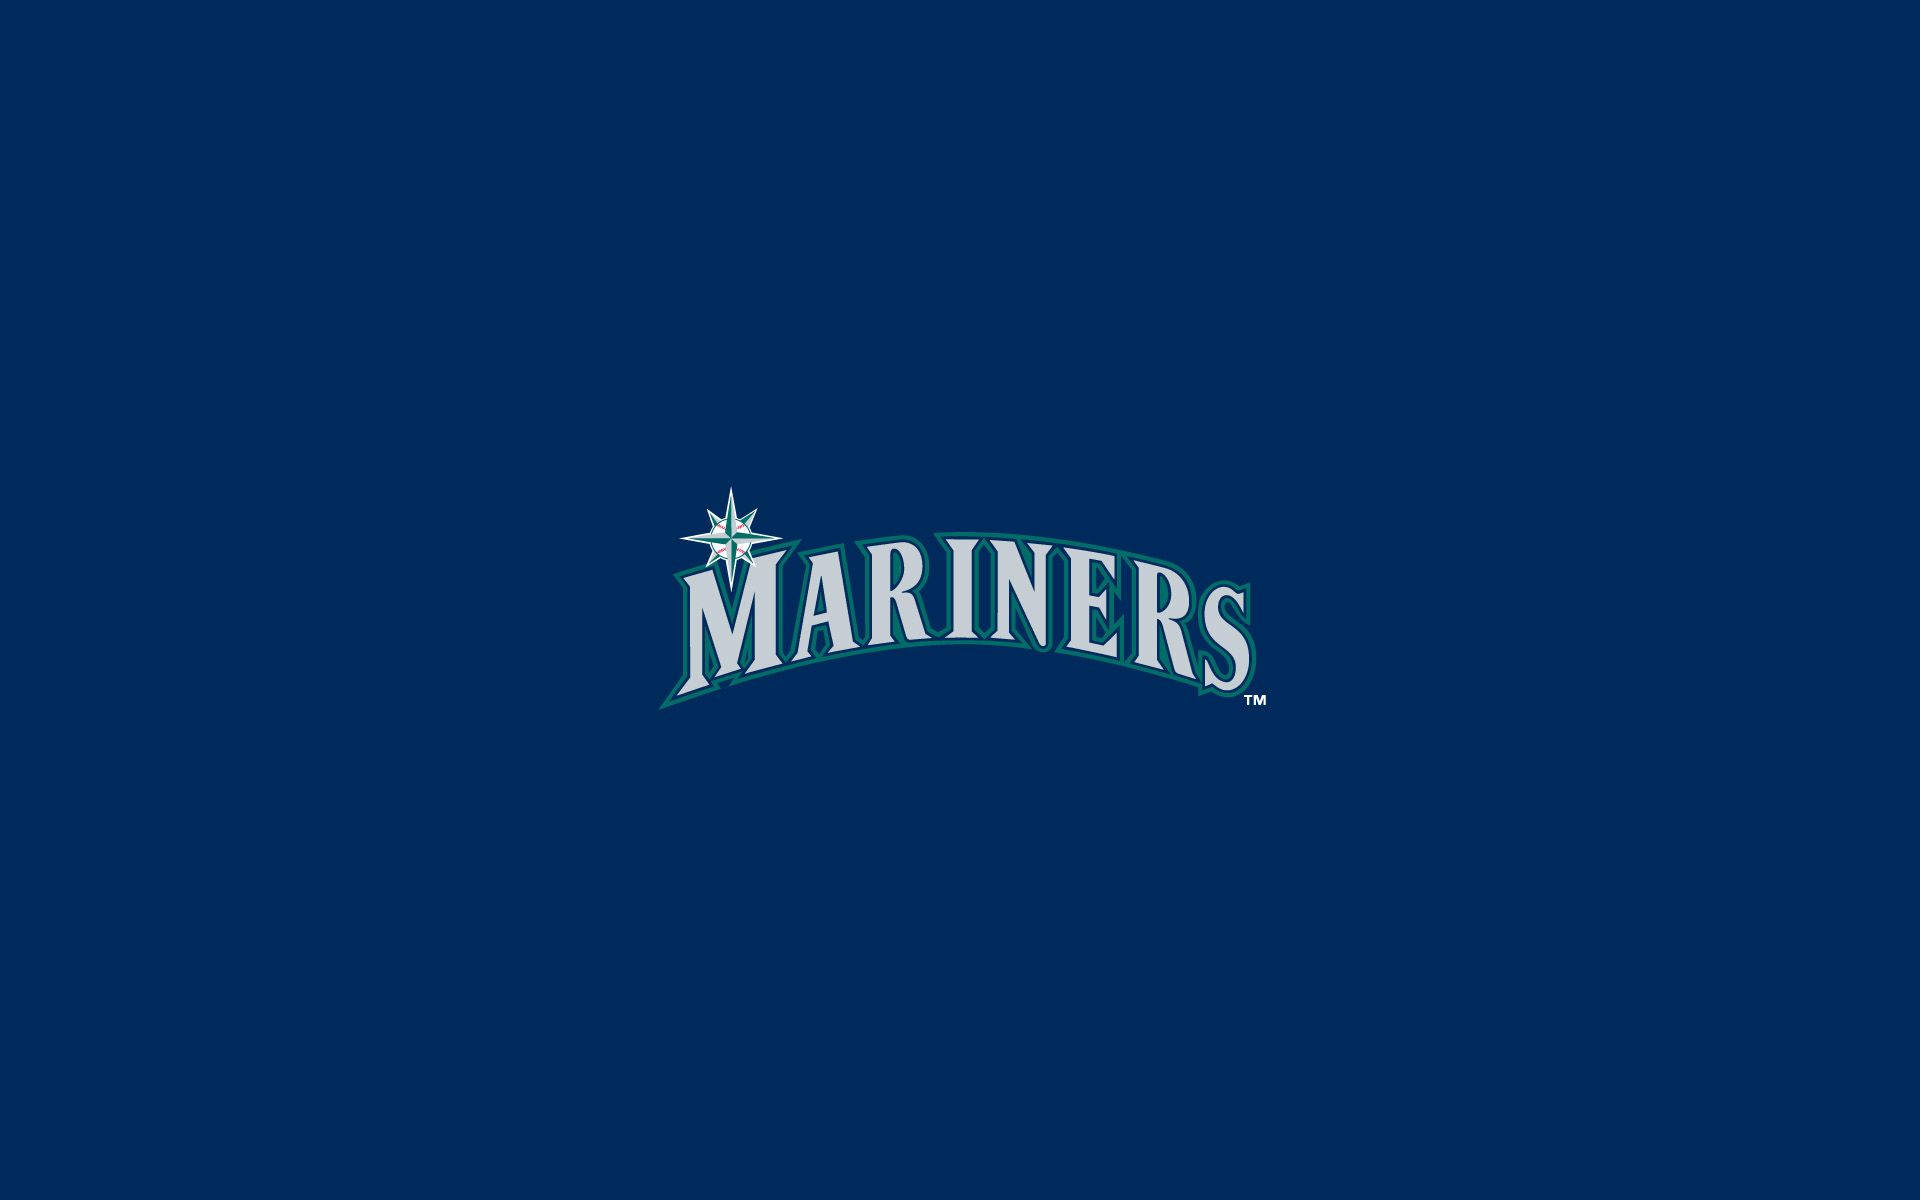 Seattlemariners Logotipo De Letras Minimalista Fondo de pantalla